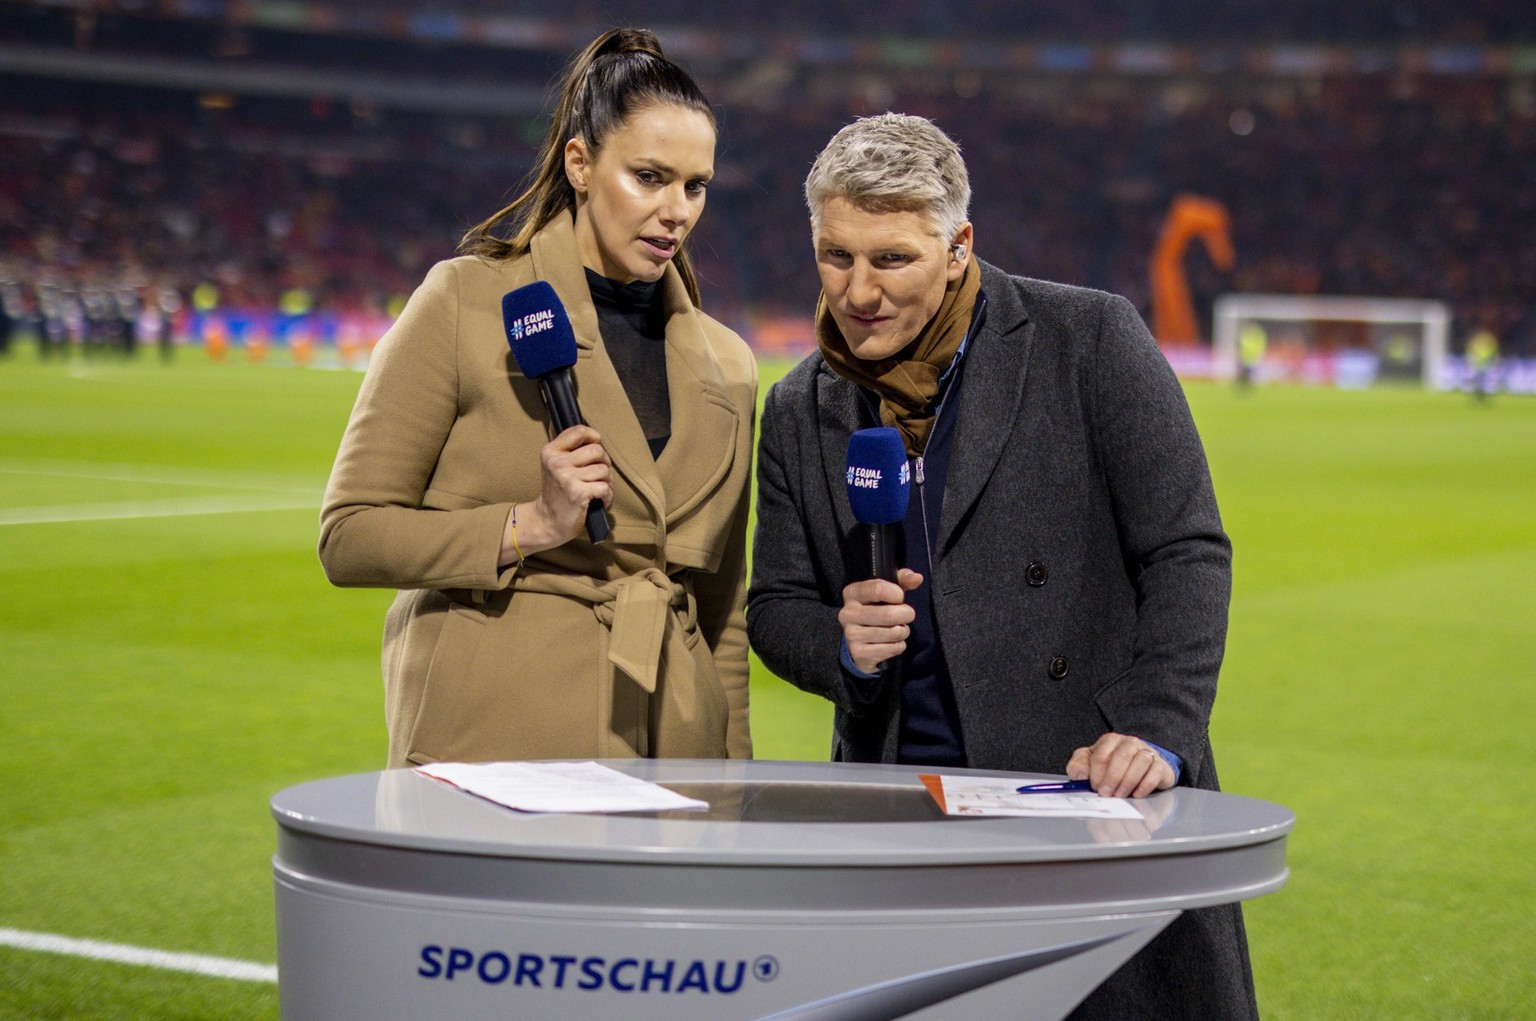 Sportschau» vor dem Aus? DFL plant Veränderungen bei TV-Rechten